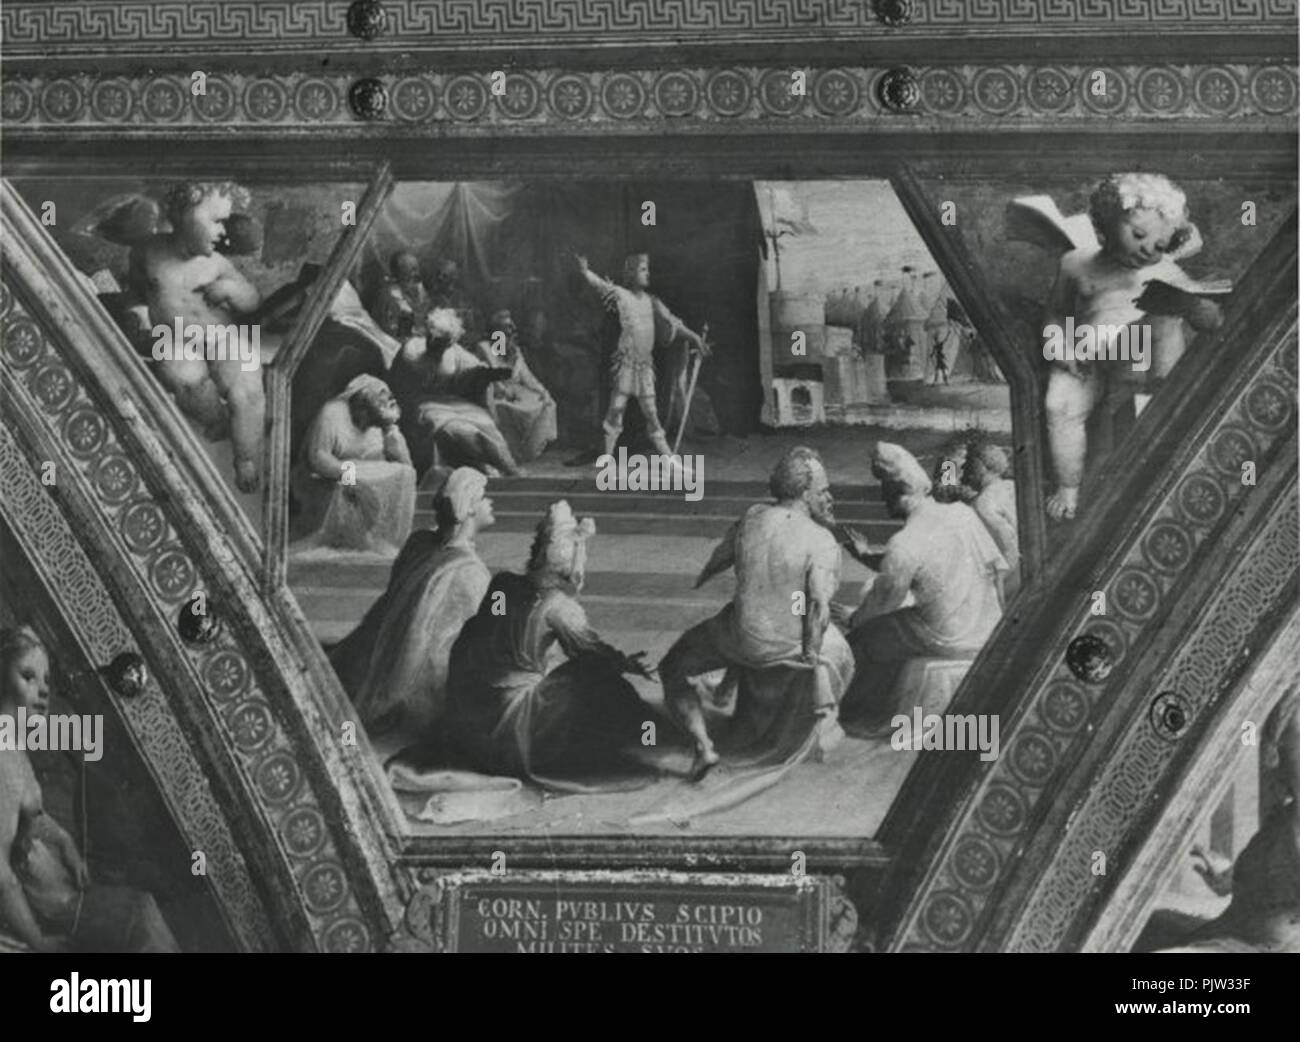 Beccafumi affreschi di palazzo bindi sergardi scipione nomina i suoi soldati tribuni. Stock Photo